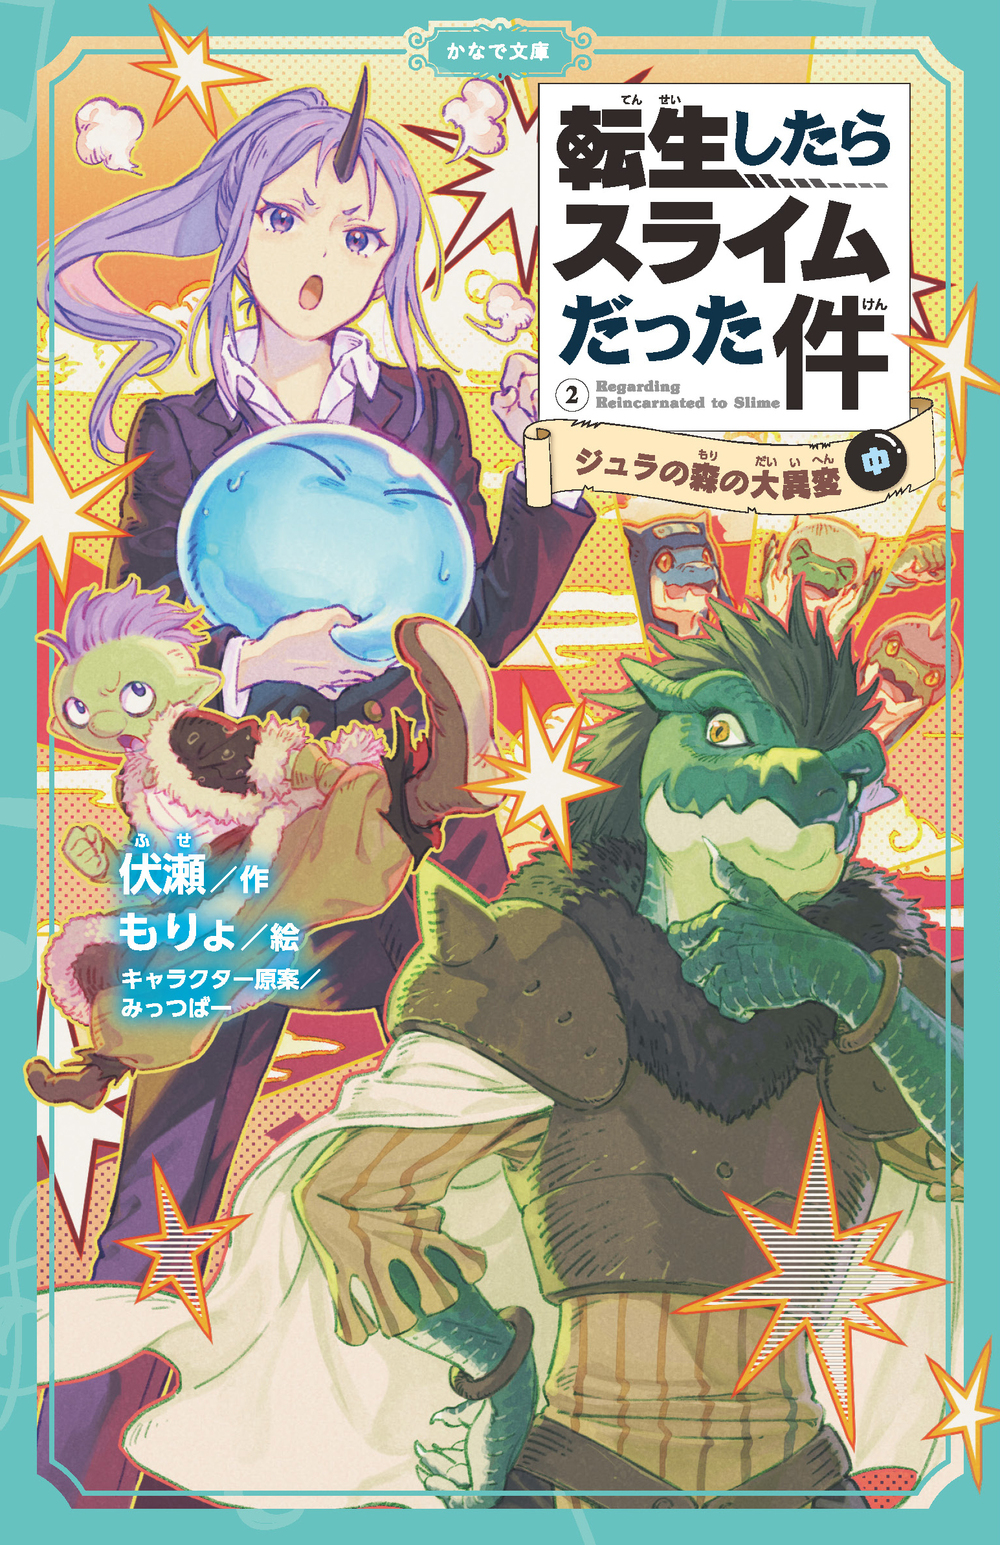 Manga Volume 15, Tensei Shitara Slime Datta Ken Wiki